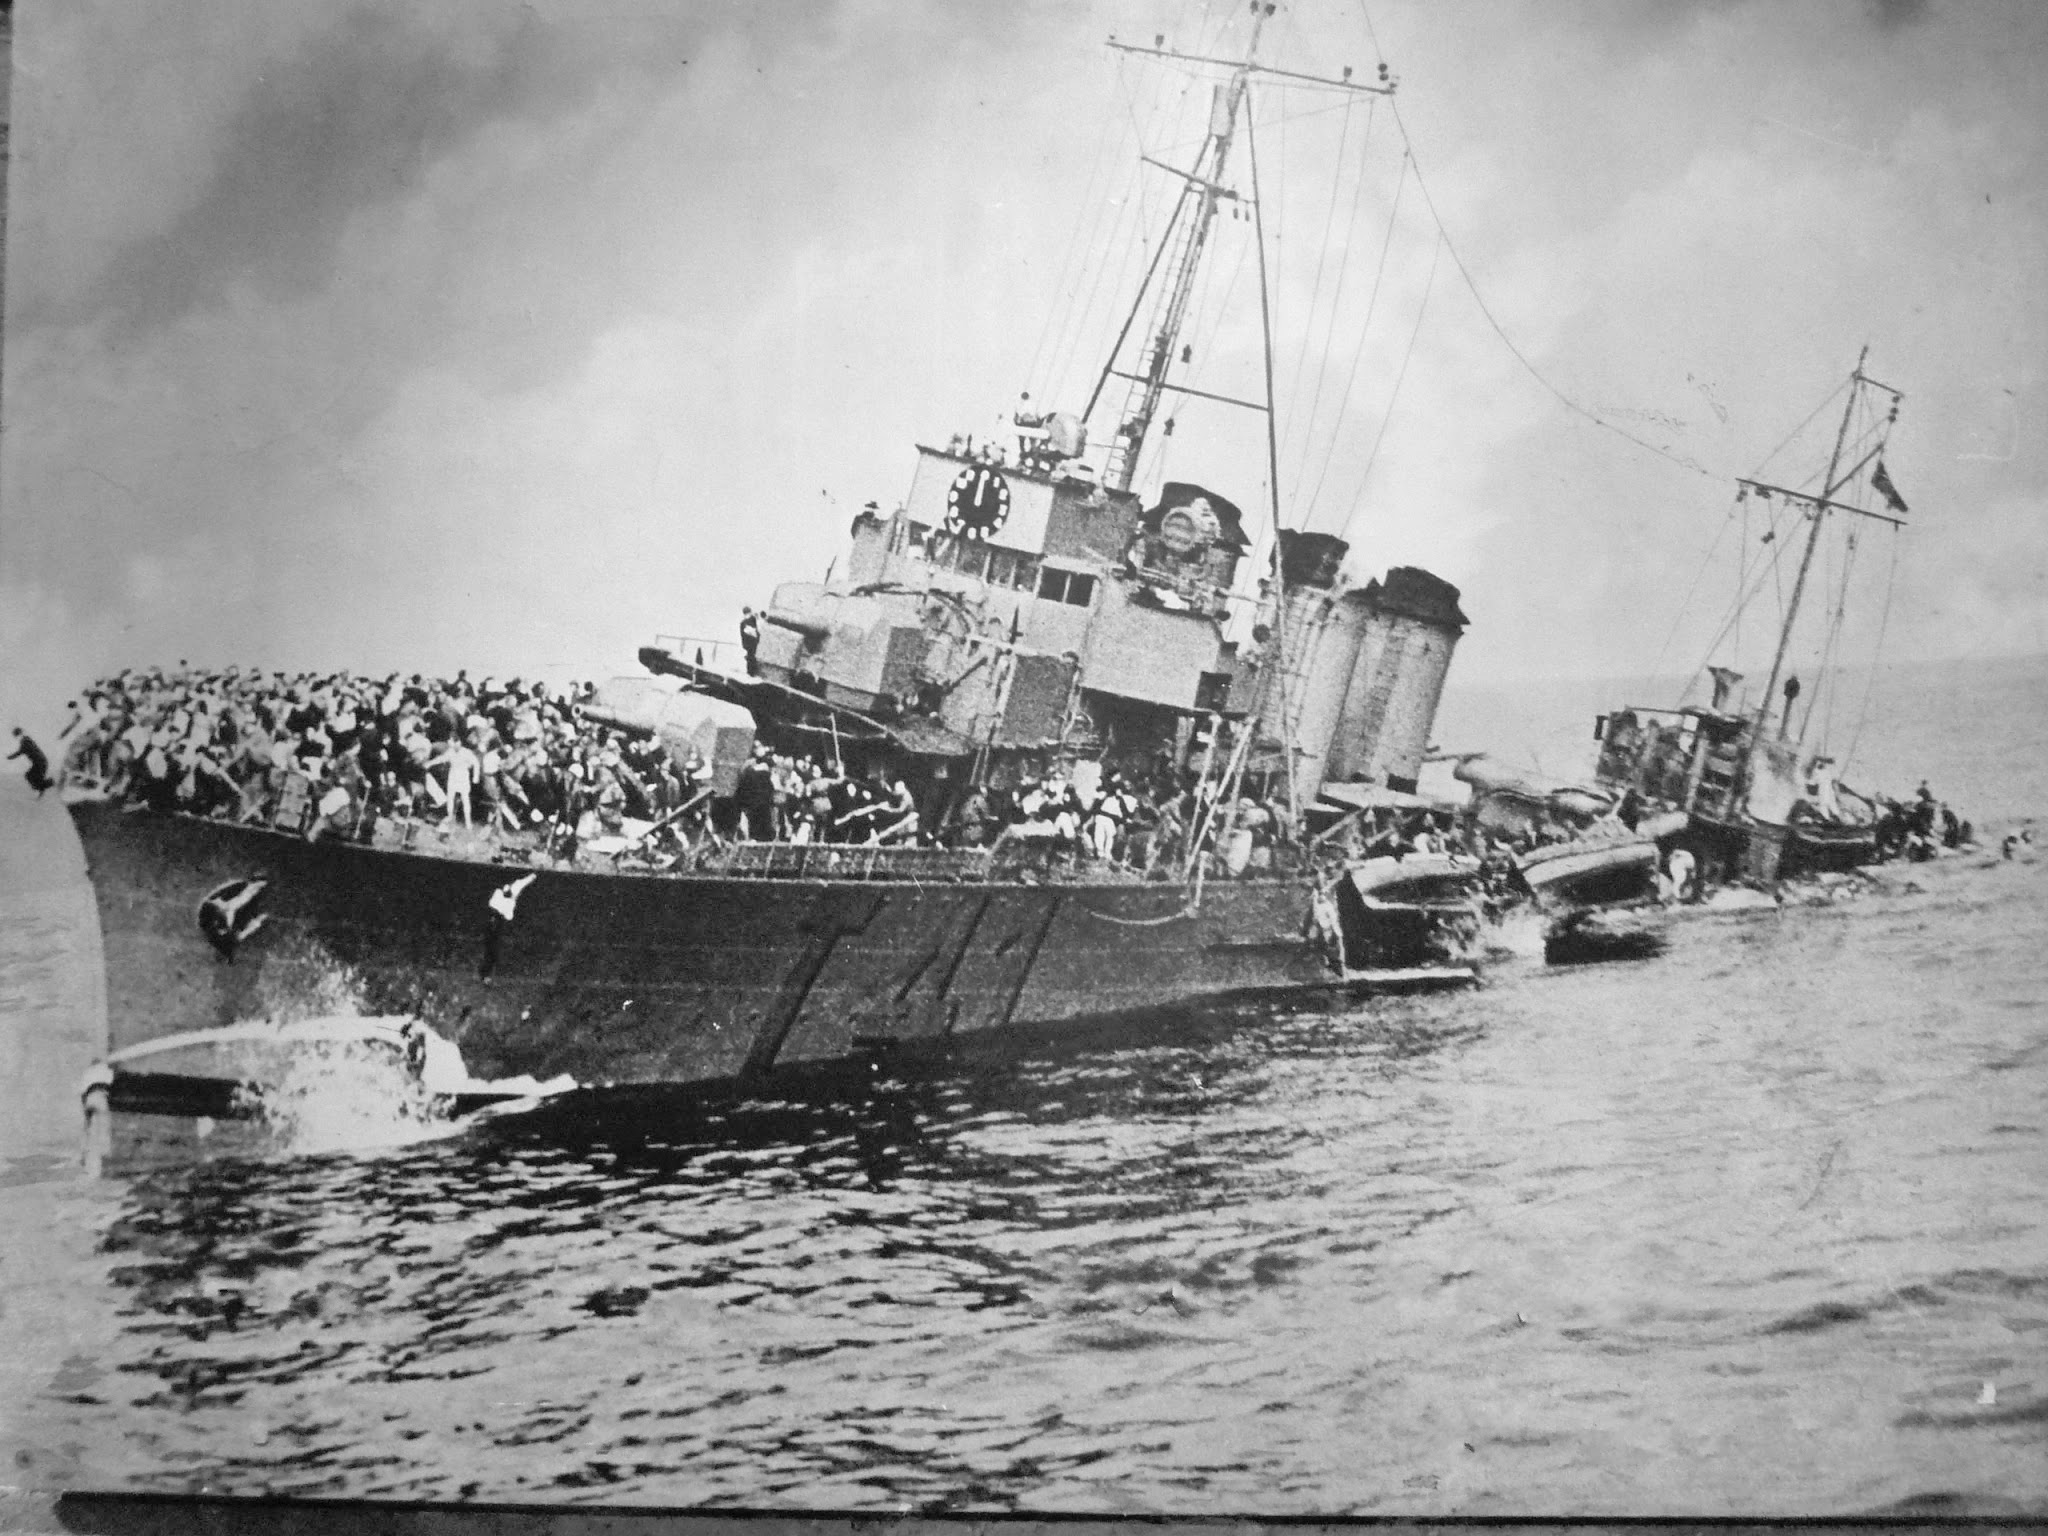 Dunkirk evacuation